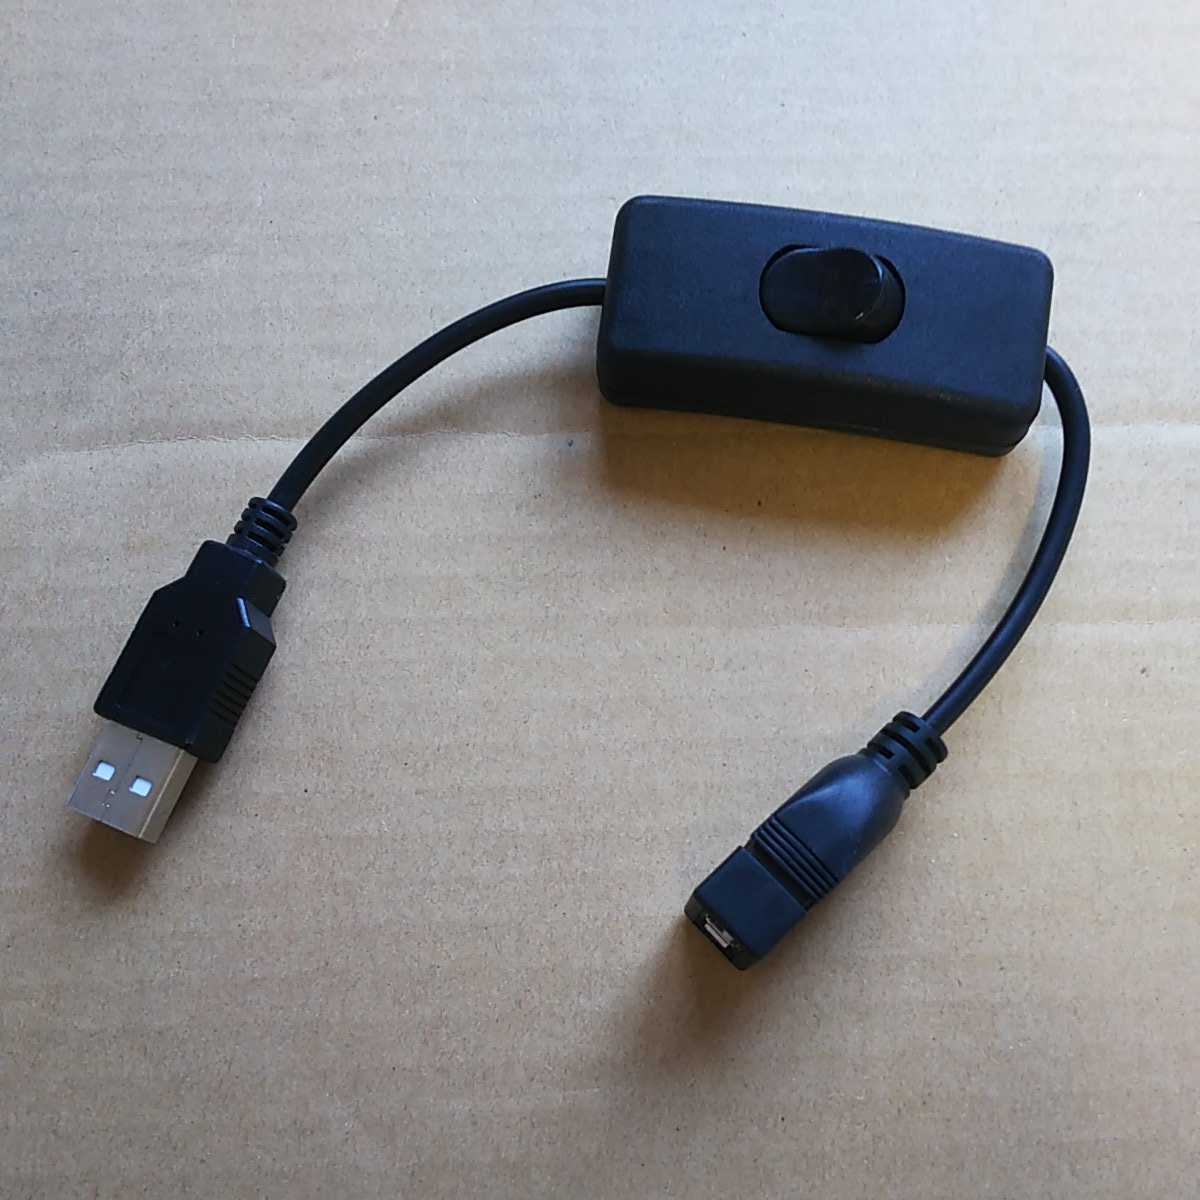 ◆スイッチ付き USBケーブル 延長 28cm USB 電源スイッチ USB A オス メス